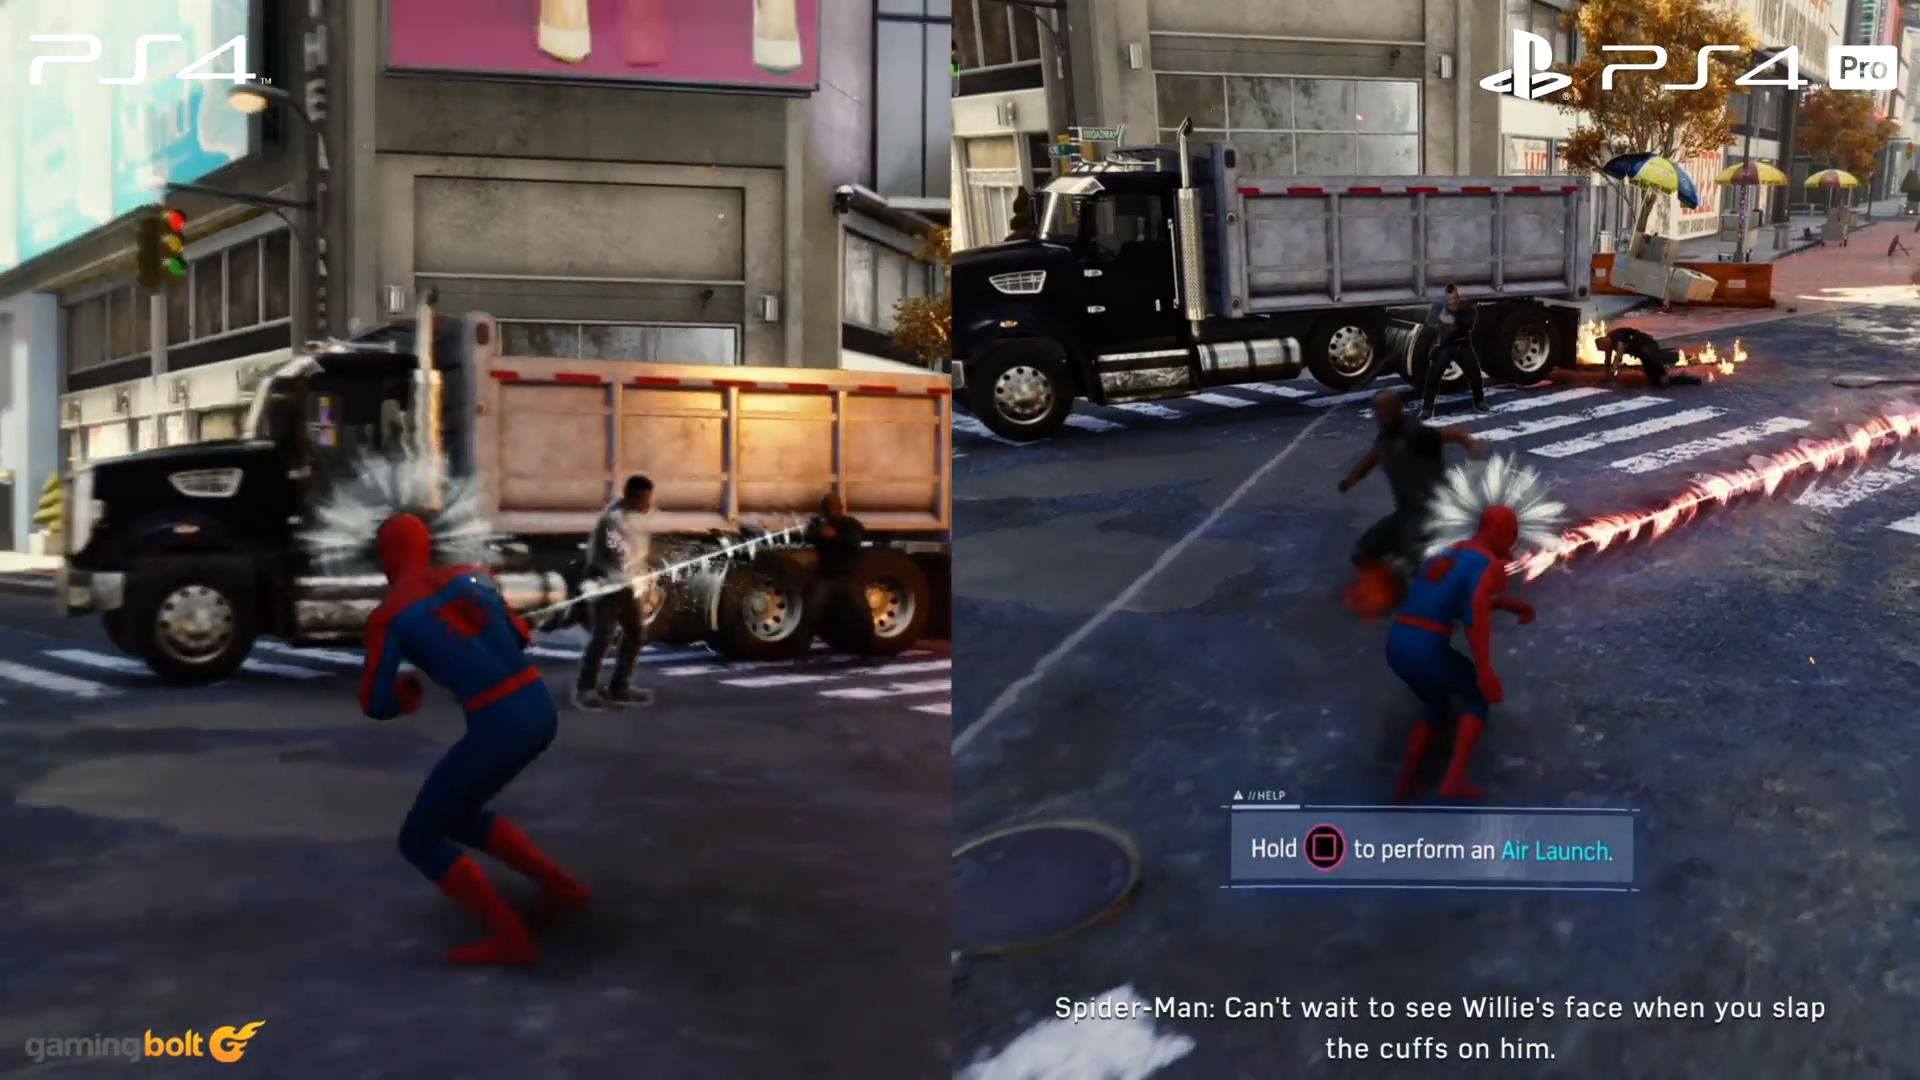 《蜘蛛侠》PS4和PS4 Pro版画面对比 后者画面更精美